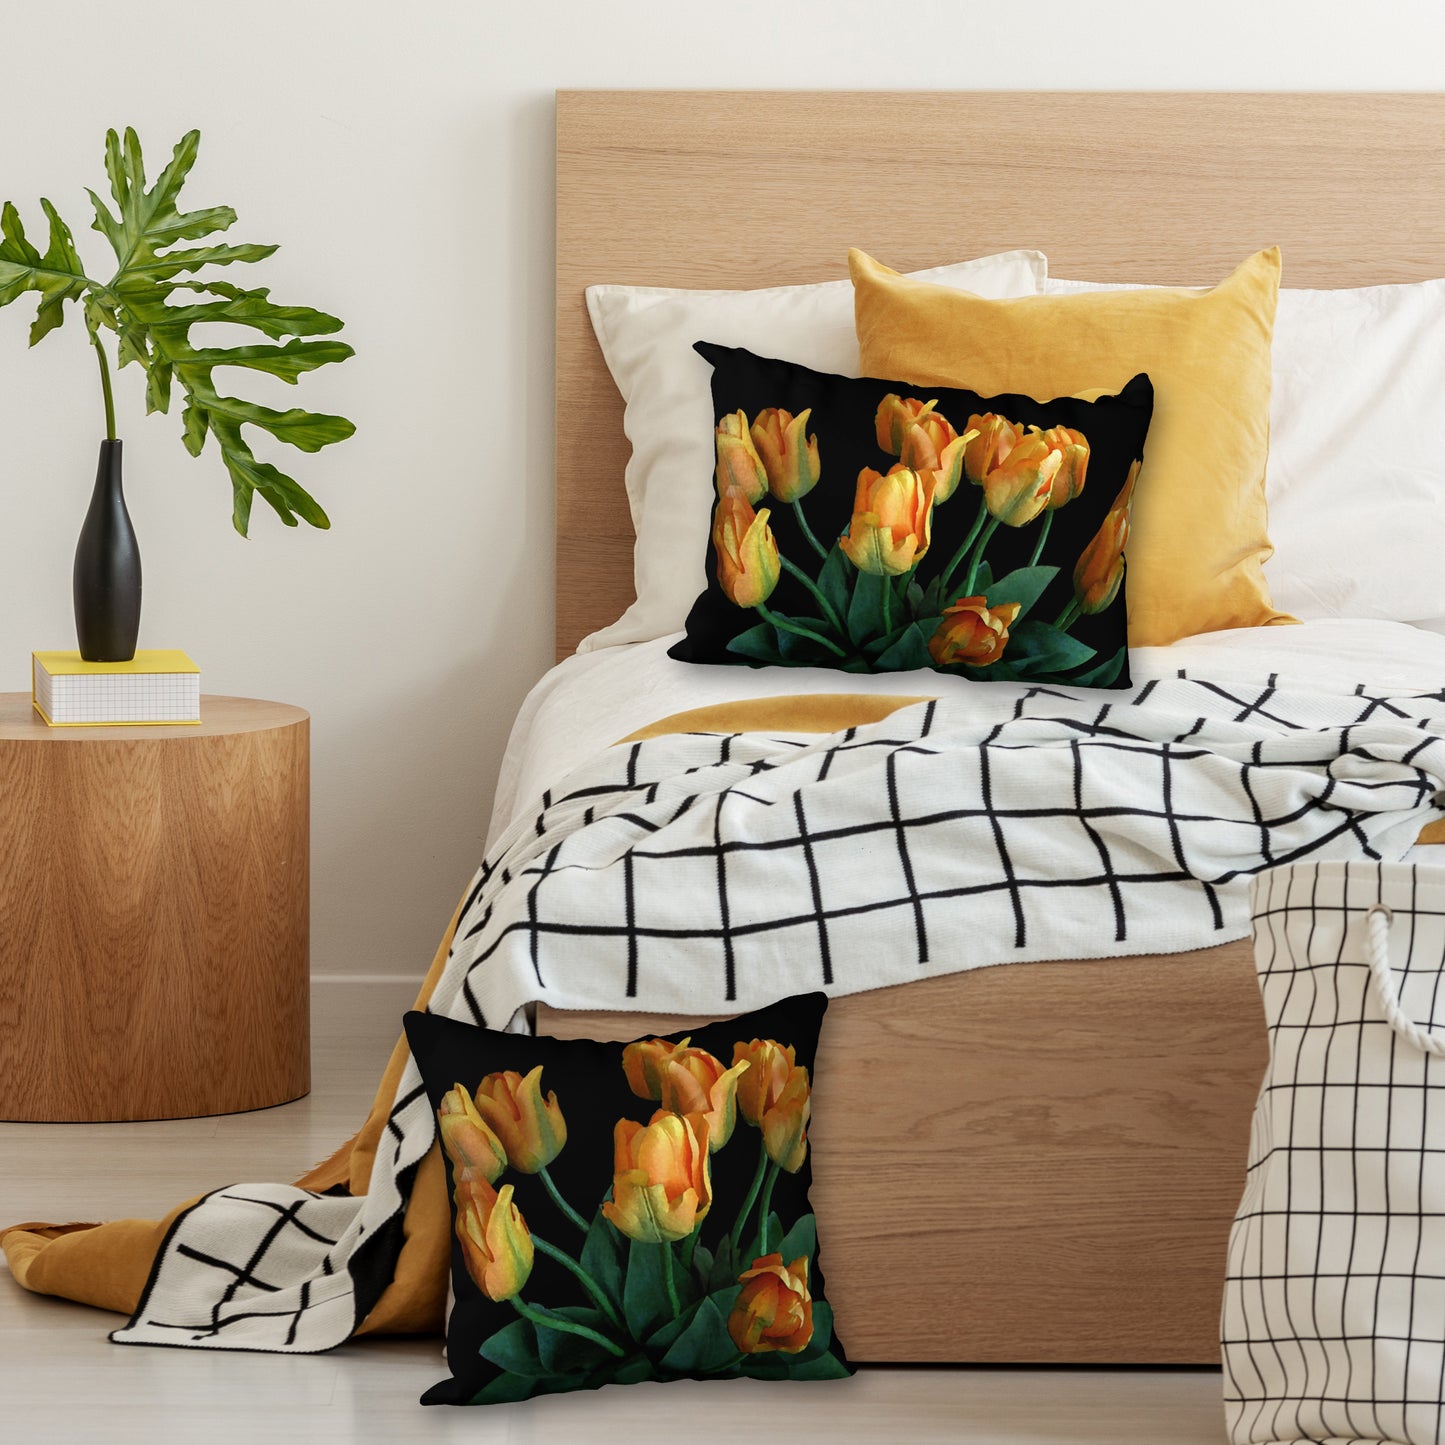 Tulips on Black Designer Pillow, 20"x14"